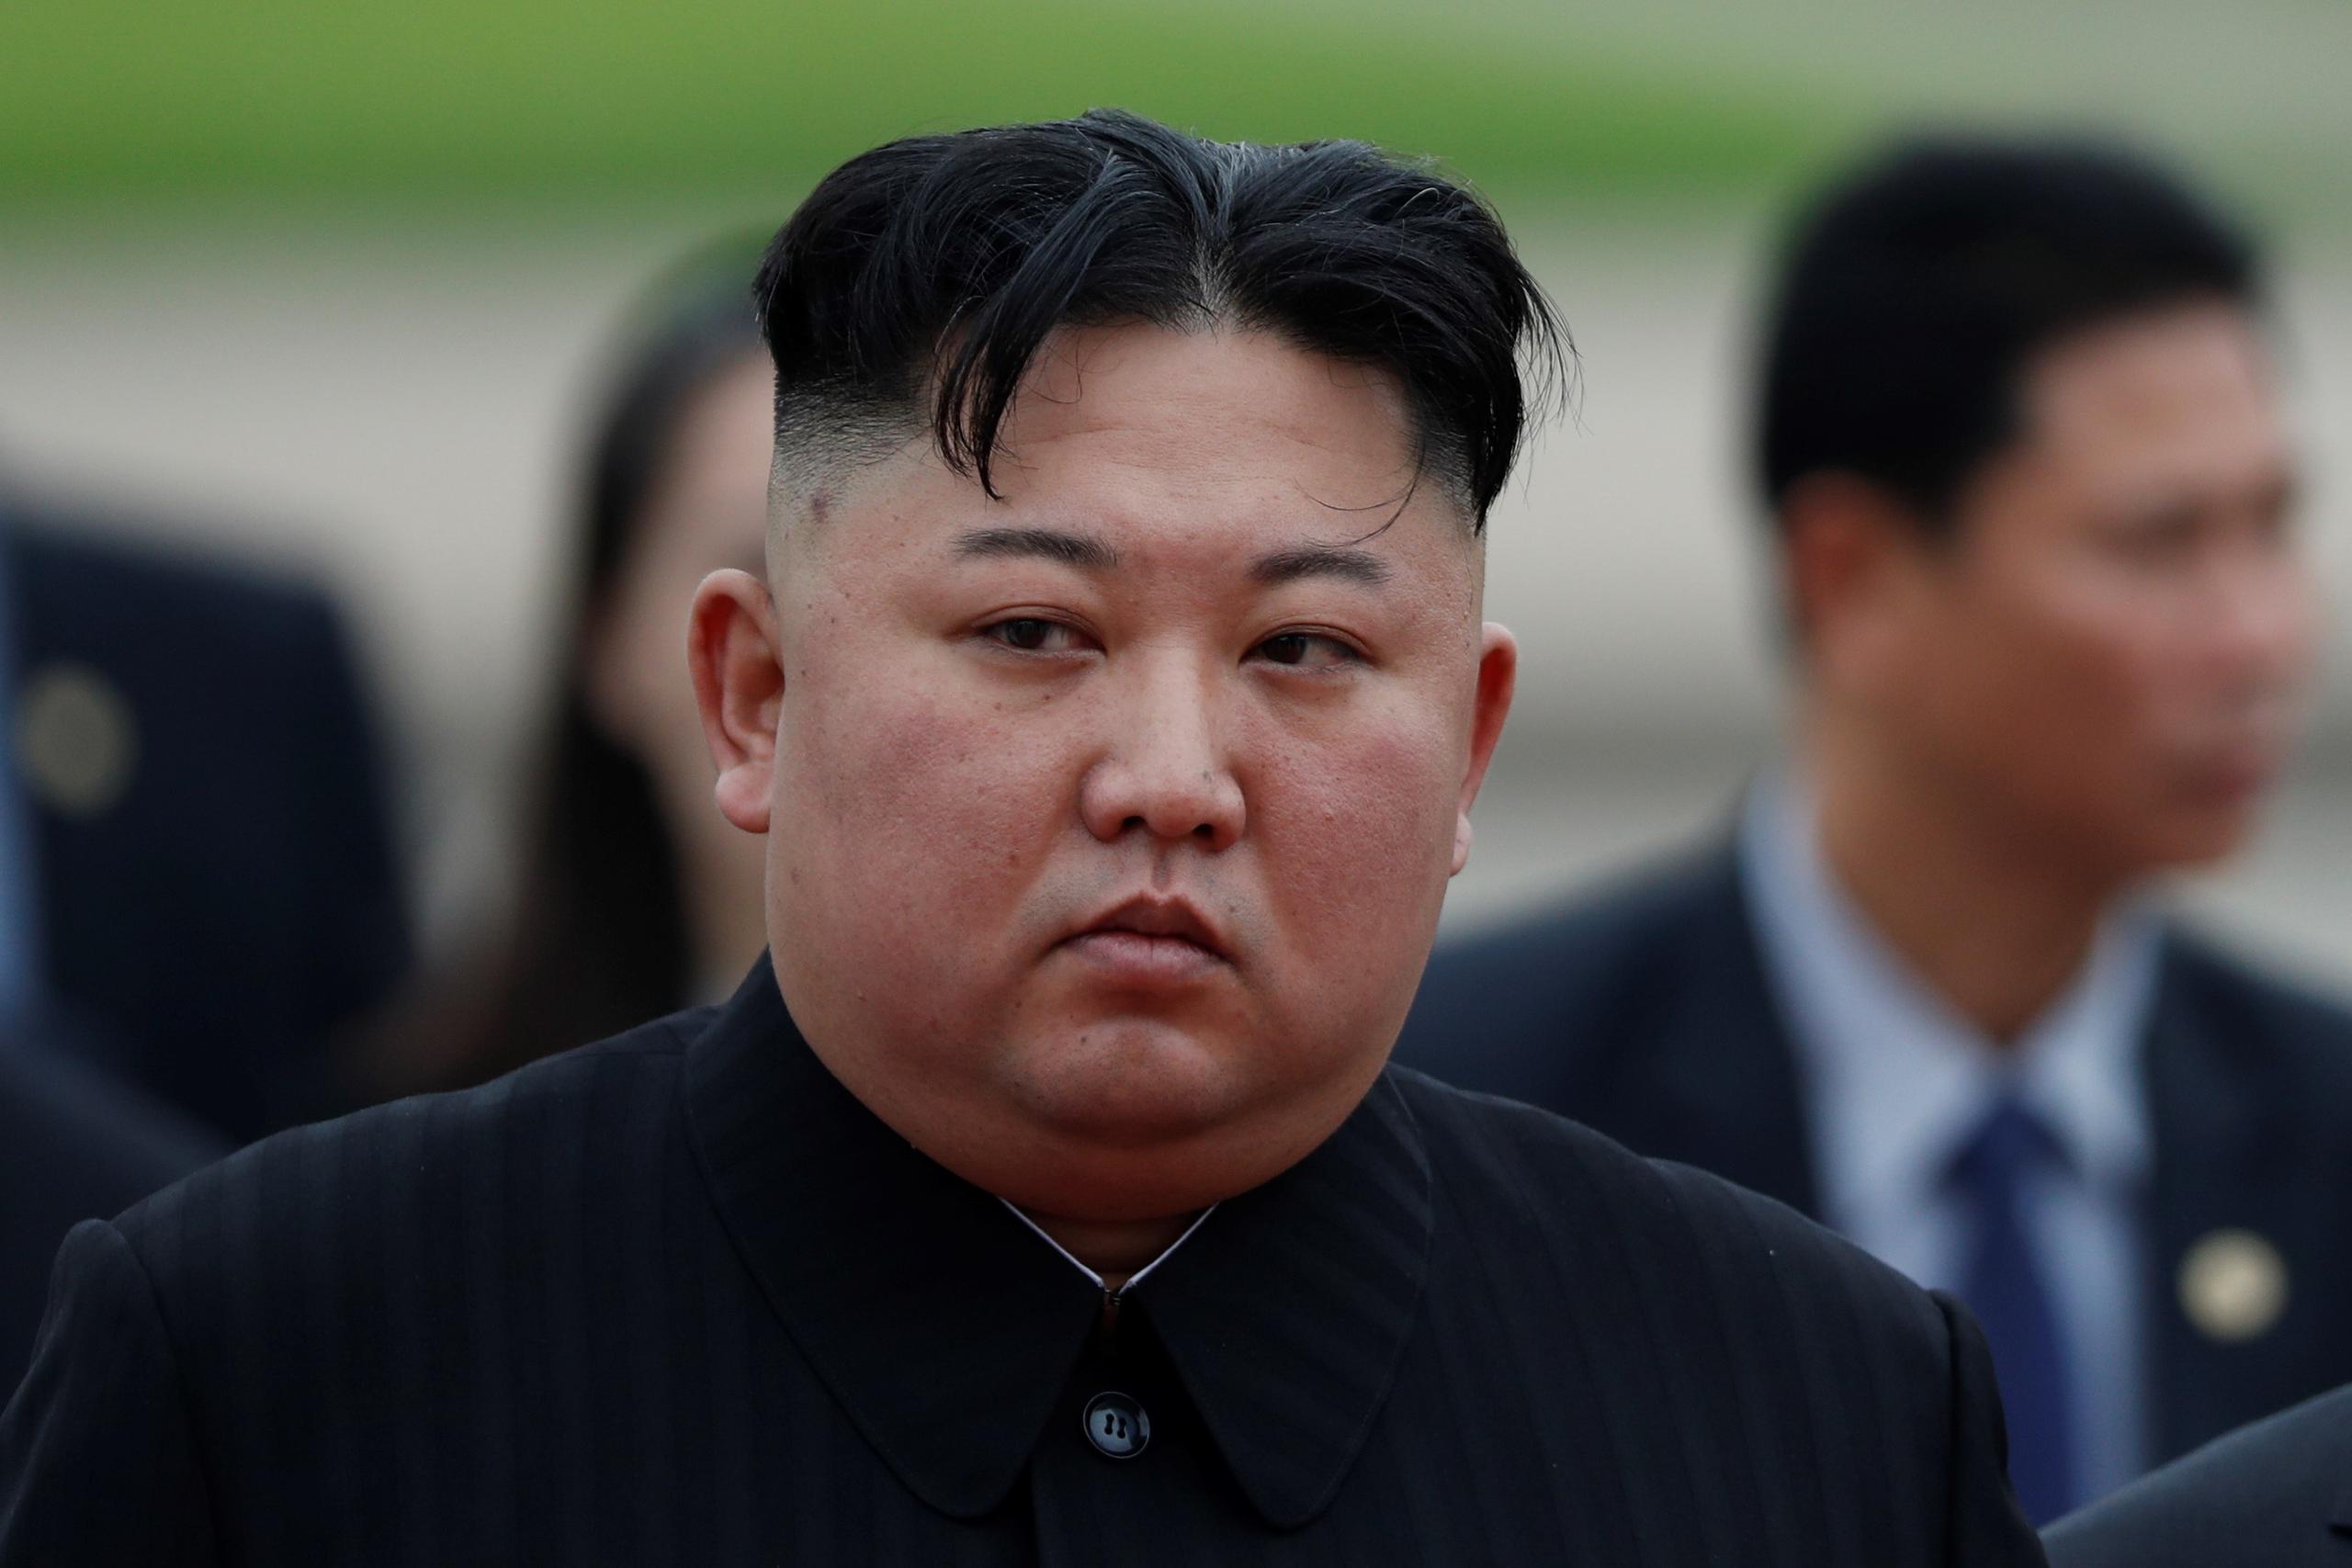 En 2013, Kim Jong-un ordenó la ejecución de su tío y mentor, Jang Song Thaek, quien fue acusado de traición.